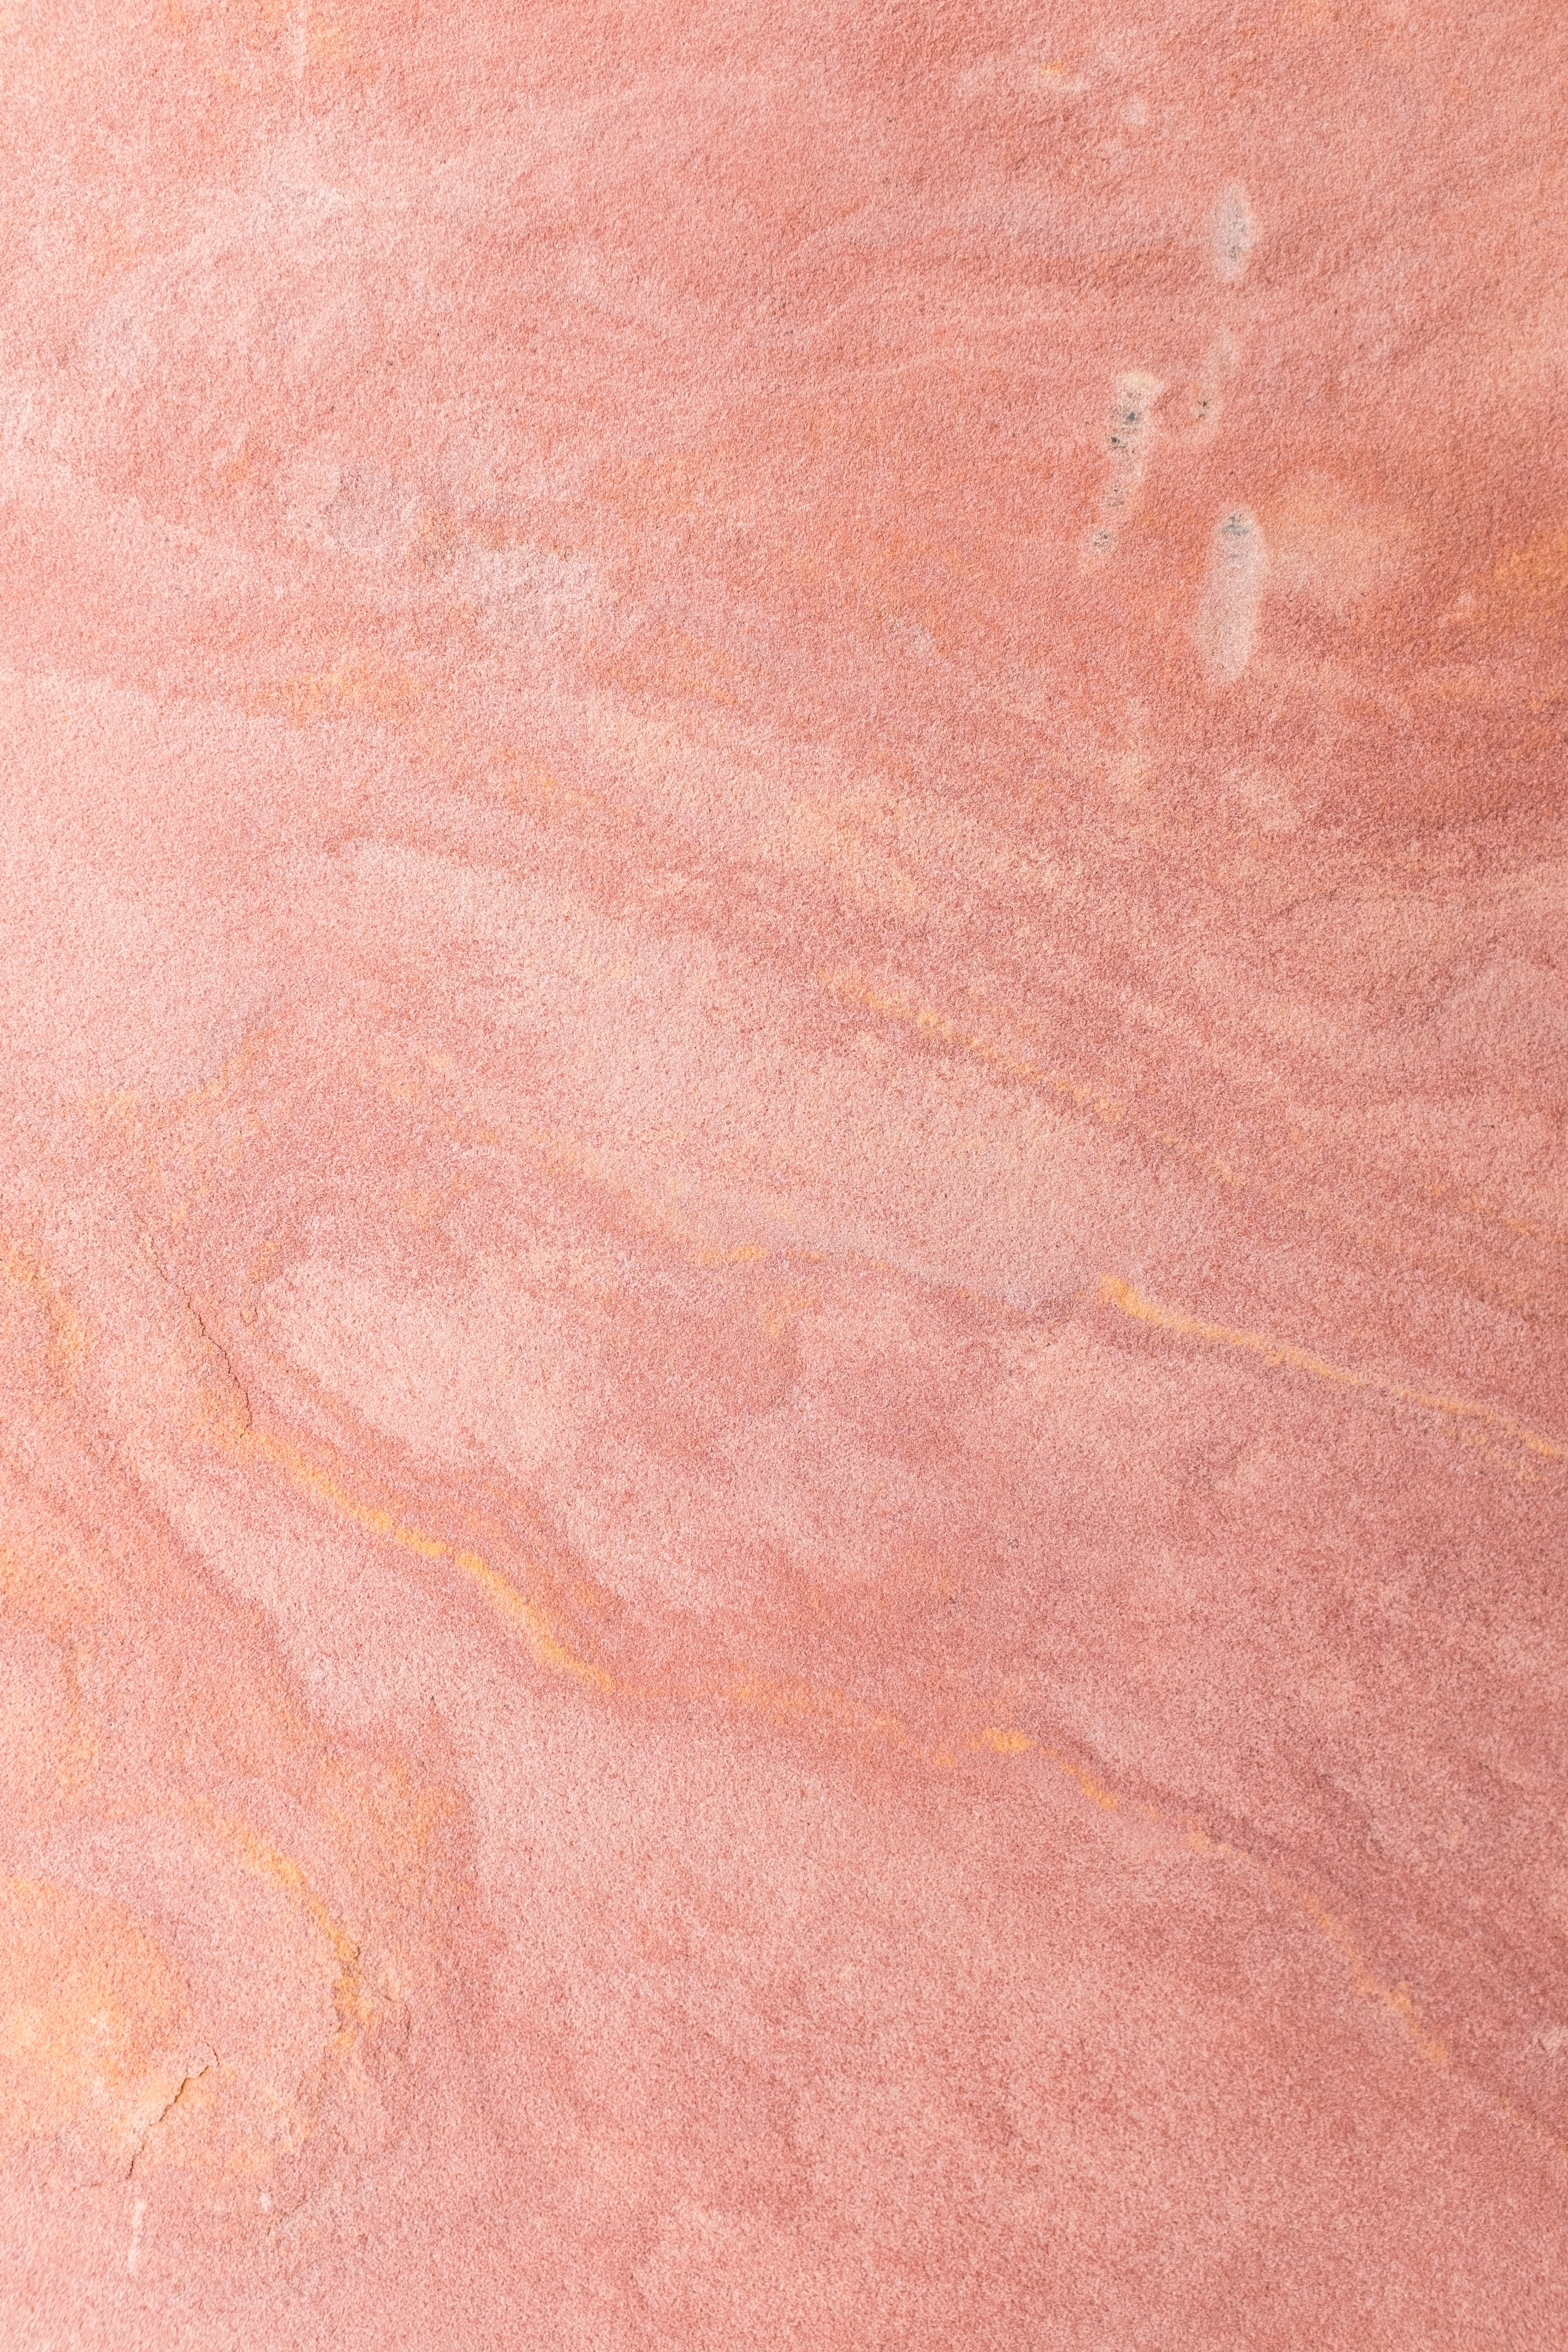 matt, pink, textures, texture, surface, wall, mat, invoice iphone wallpaper